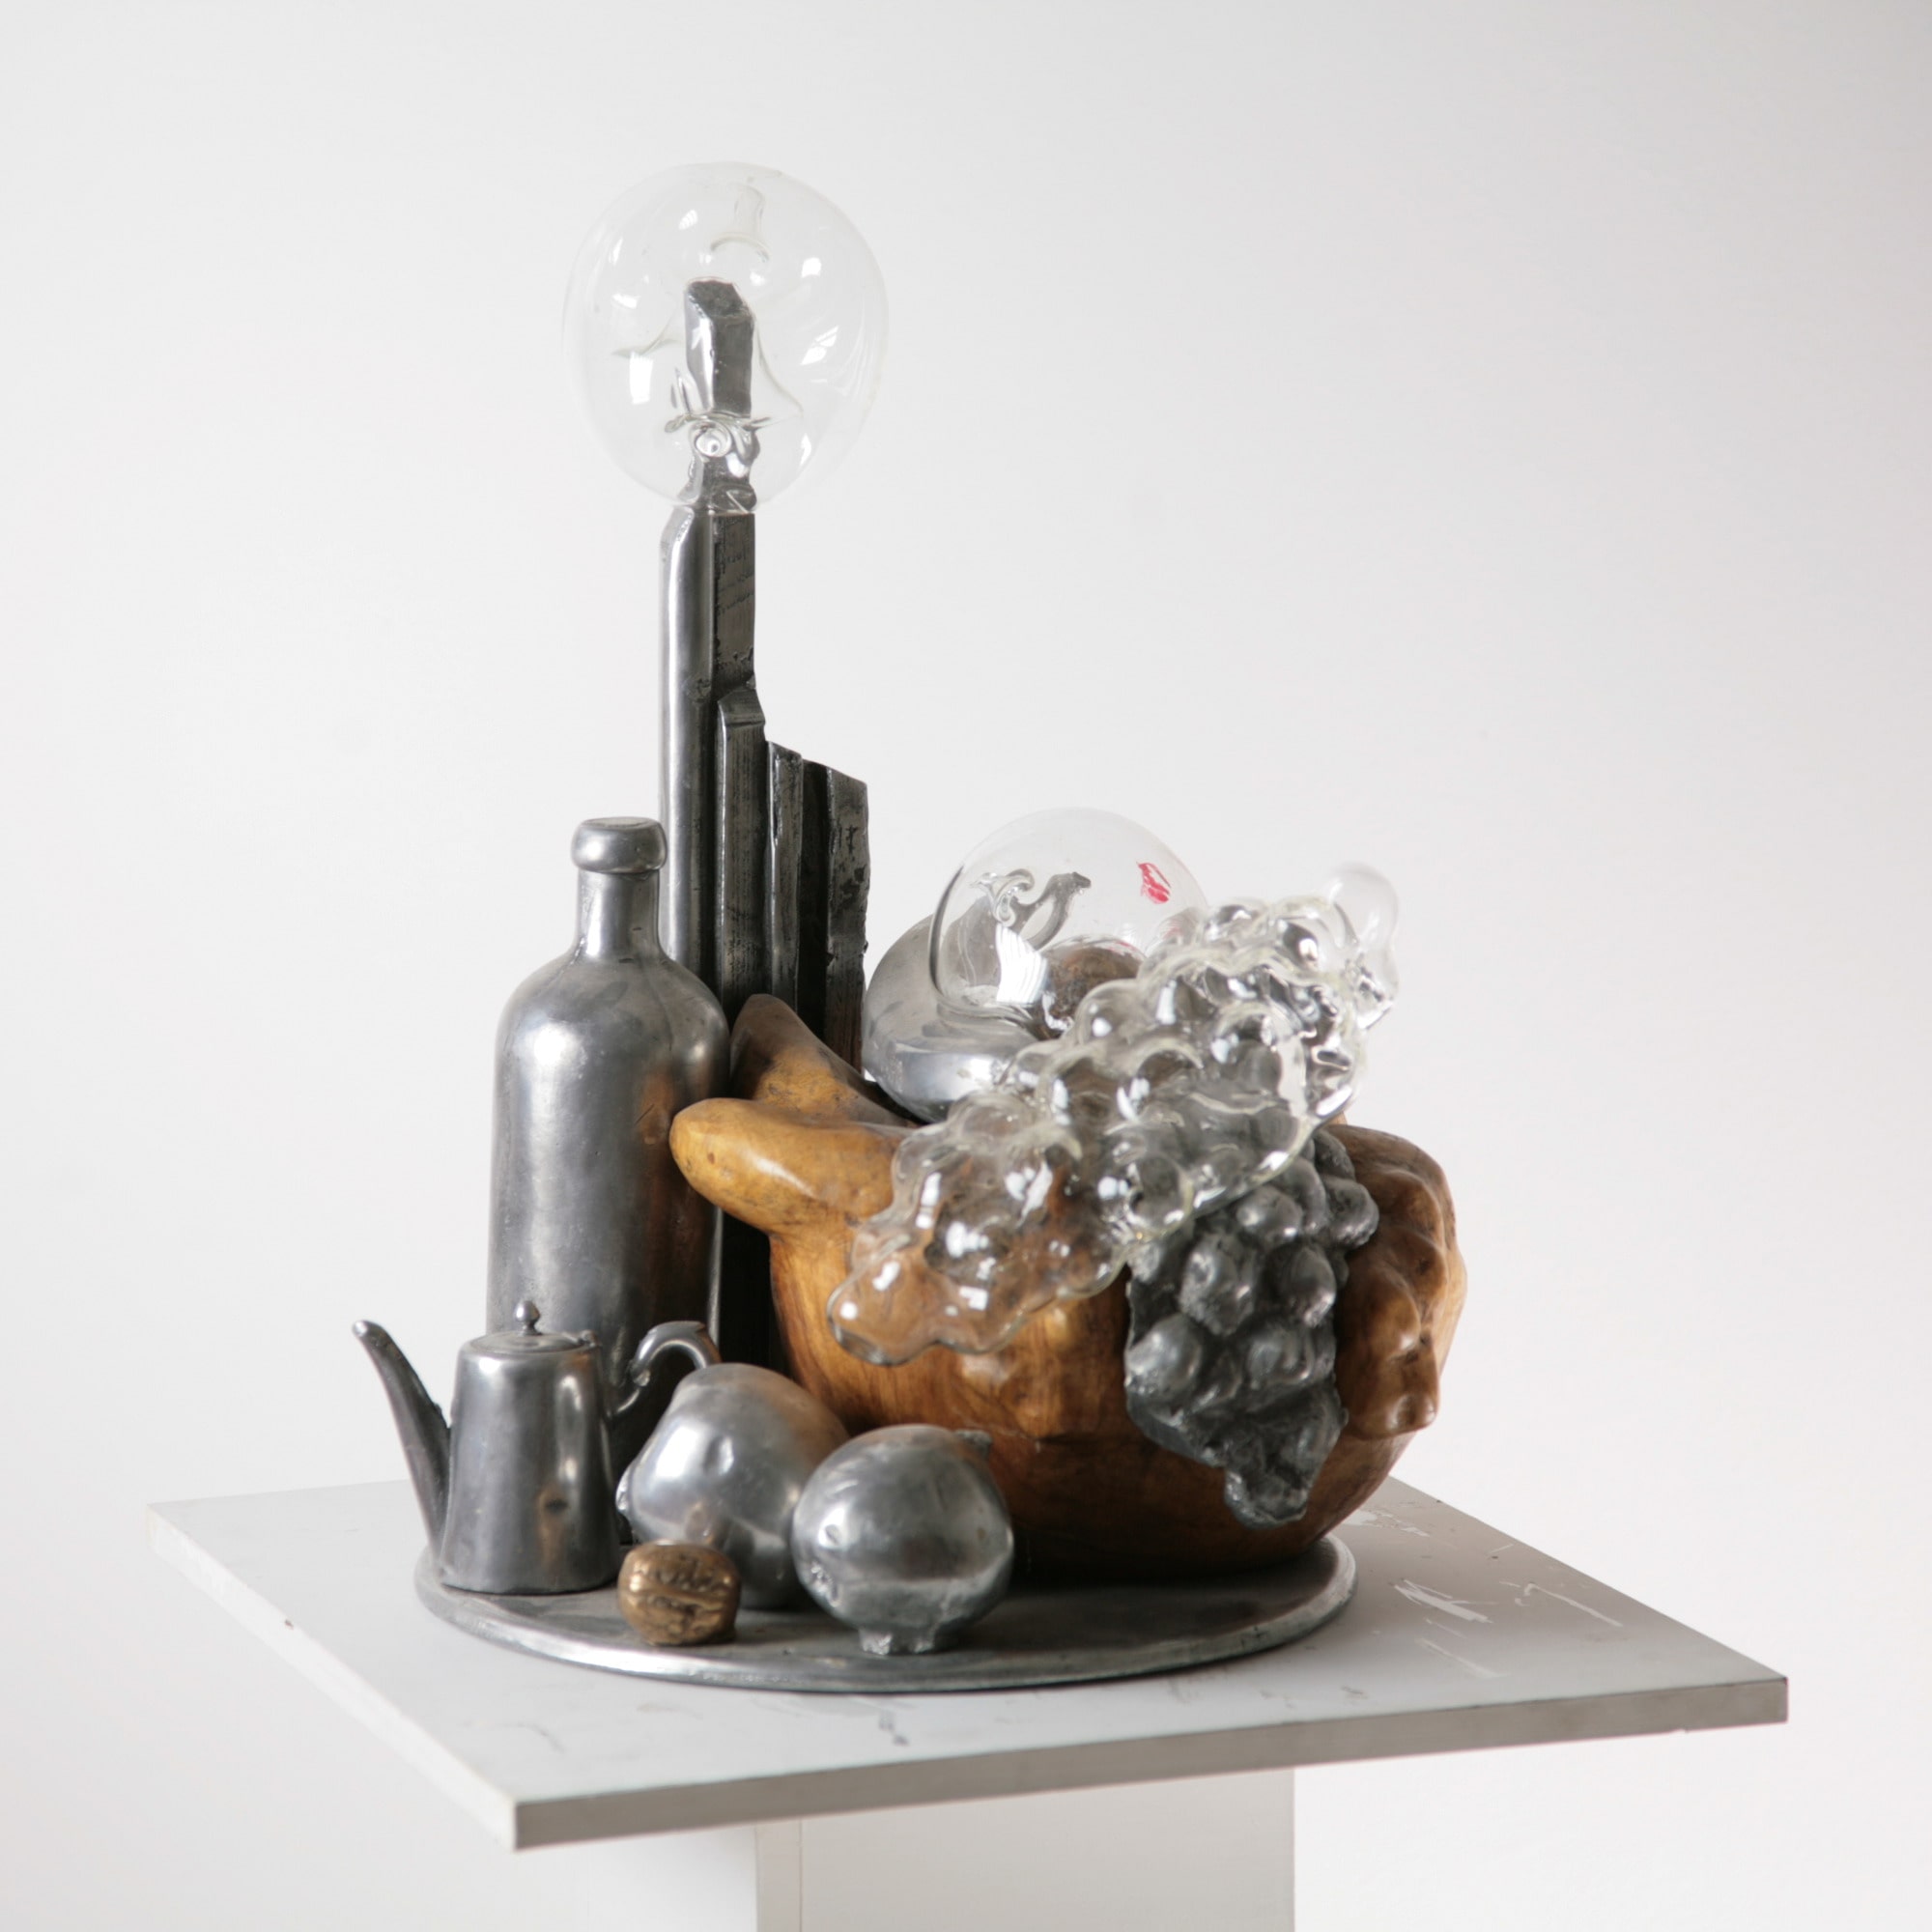 Federico Errante artista: Natura morta metropolitana, 1998 (scultura in noce, alluminio, bronzo e vetro soffiato) - opera di denuncia sociale: il benessere è fragile.